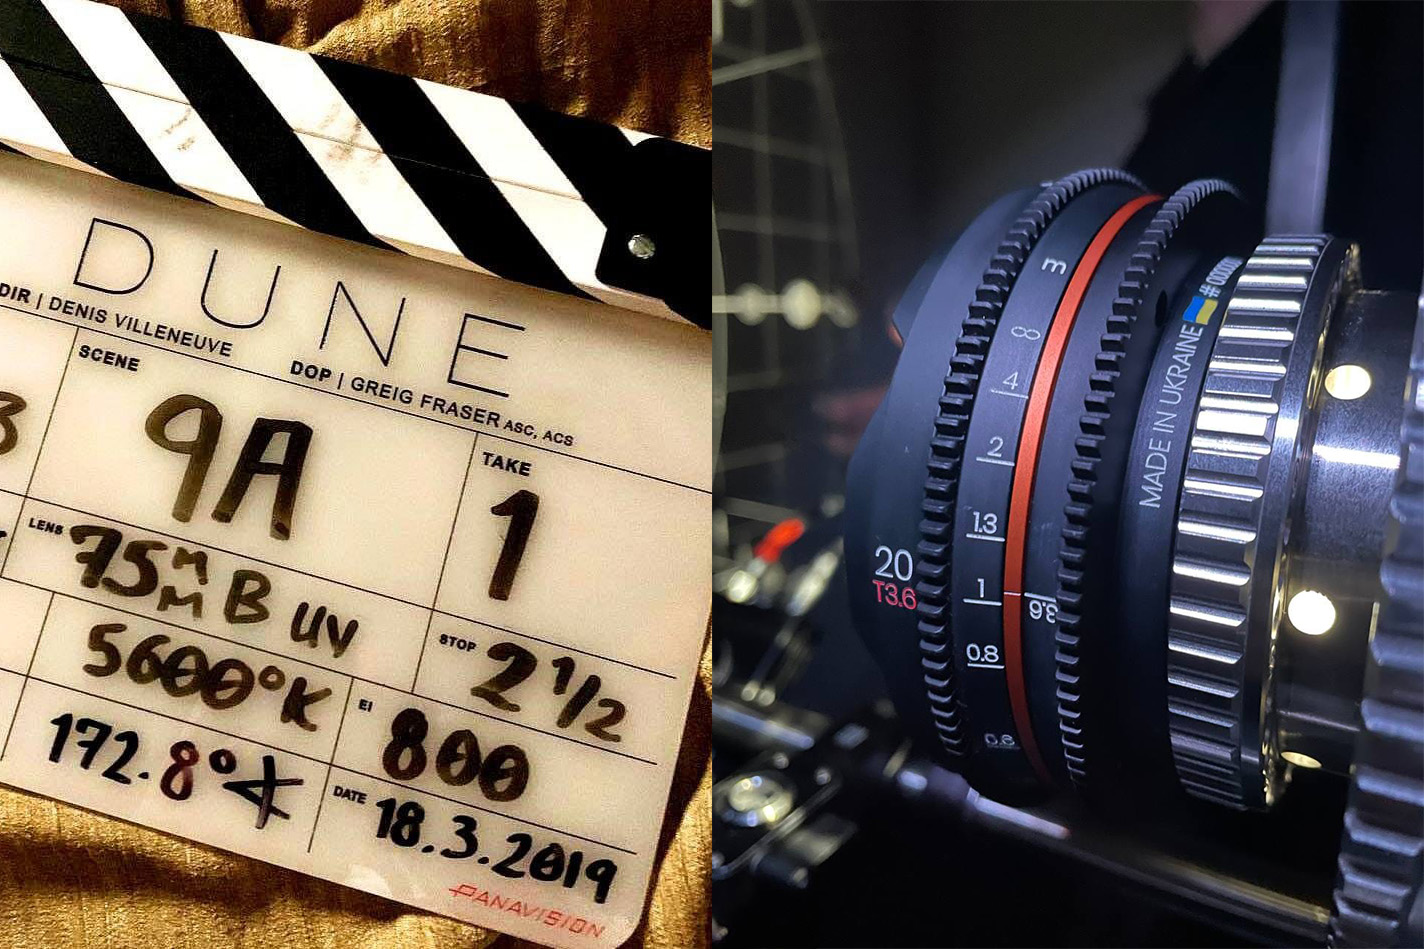 Фільм «Дюна» знятий українськими об’єктивами IronGlass – оператором фільму та співробітником компанії.